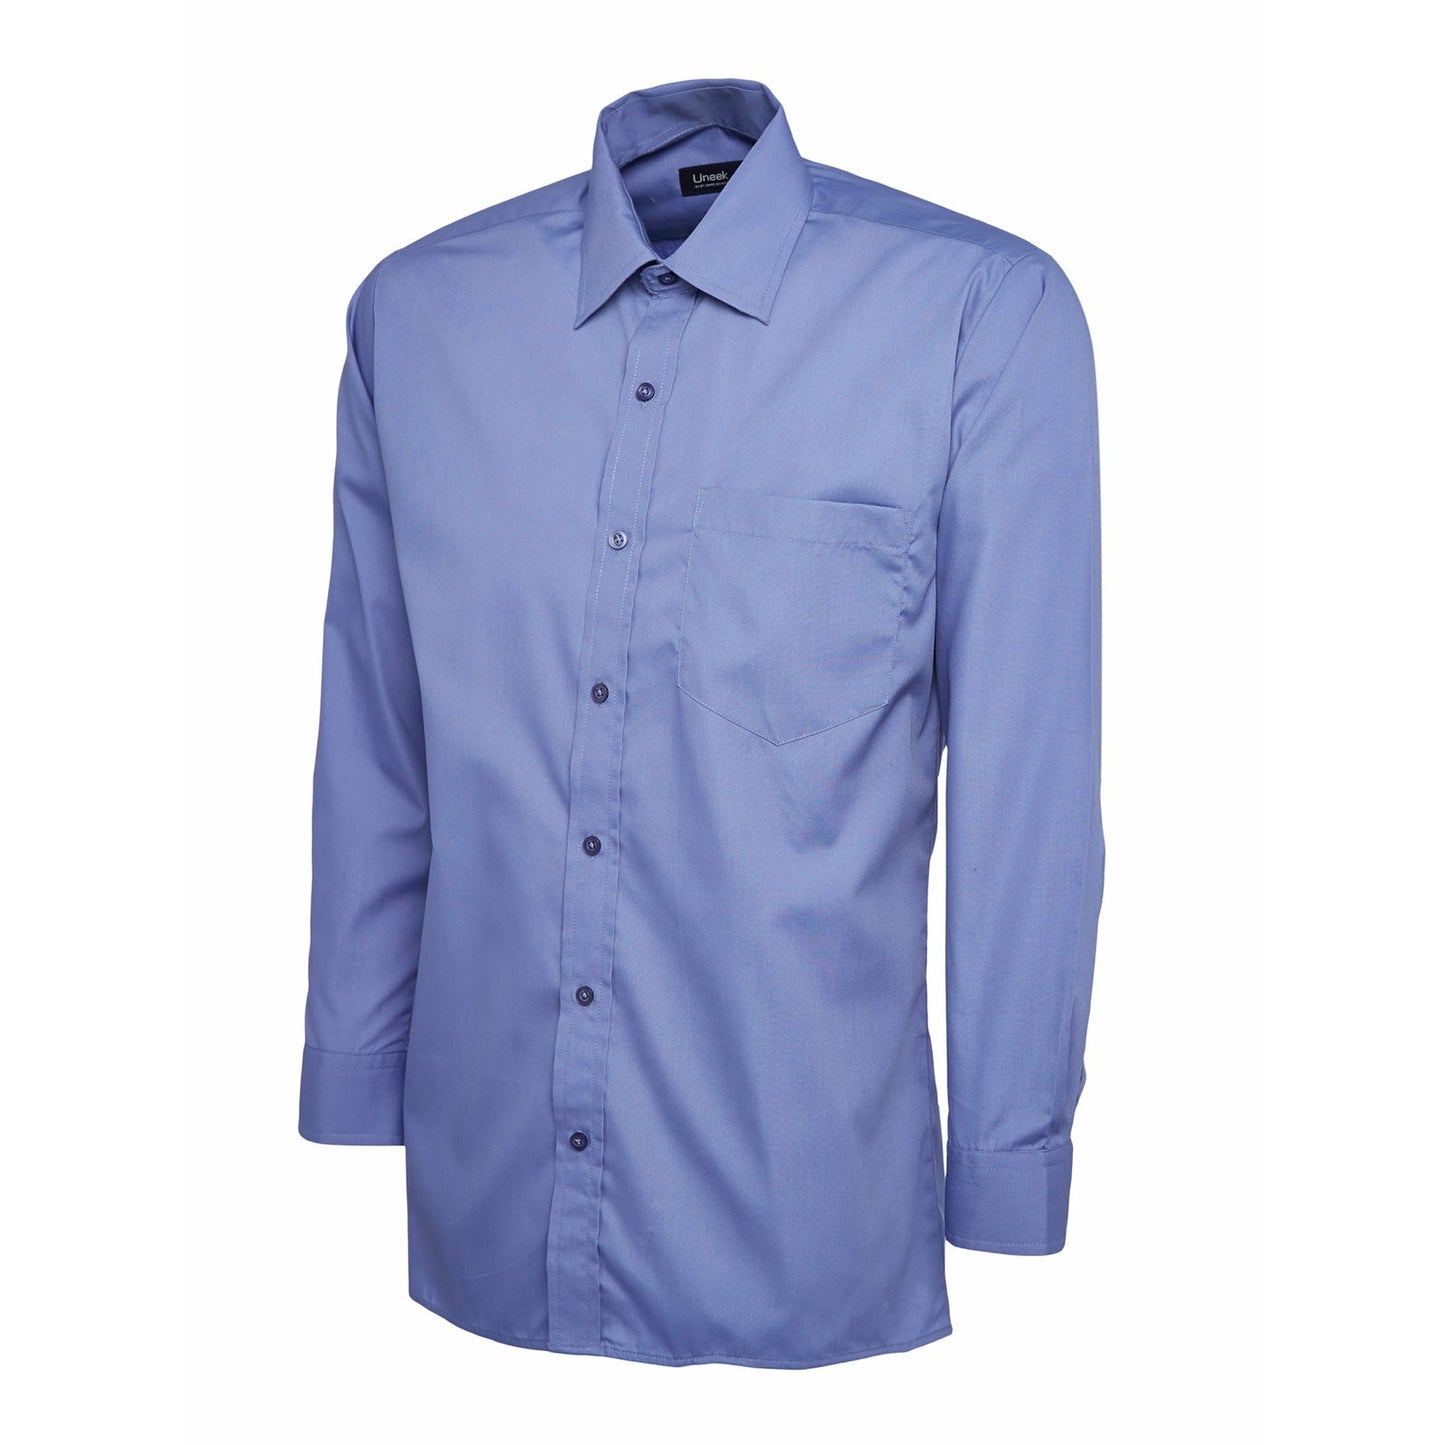 Mens Poplin Full Sleeve Shirt (14.5 - 16.5) - Mid Blue